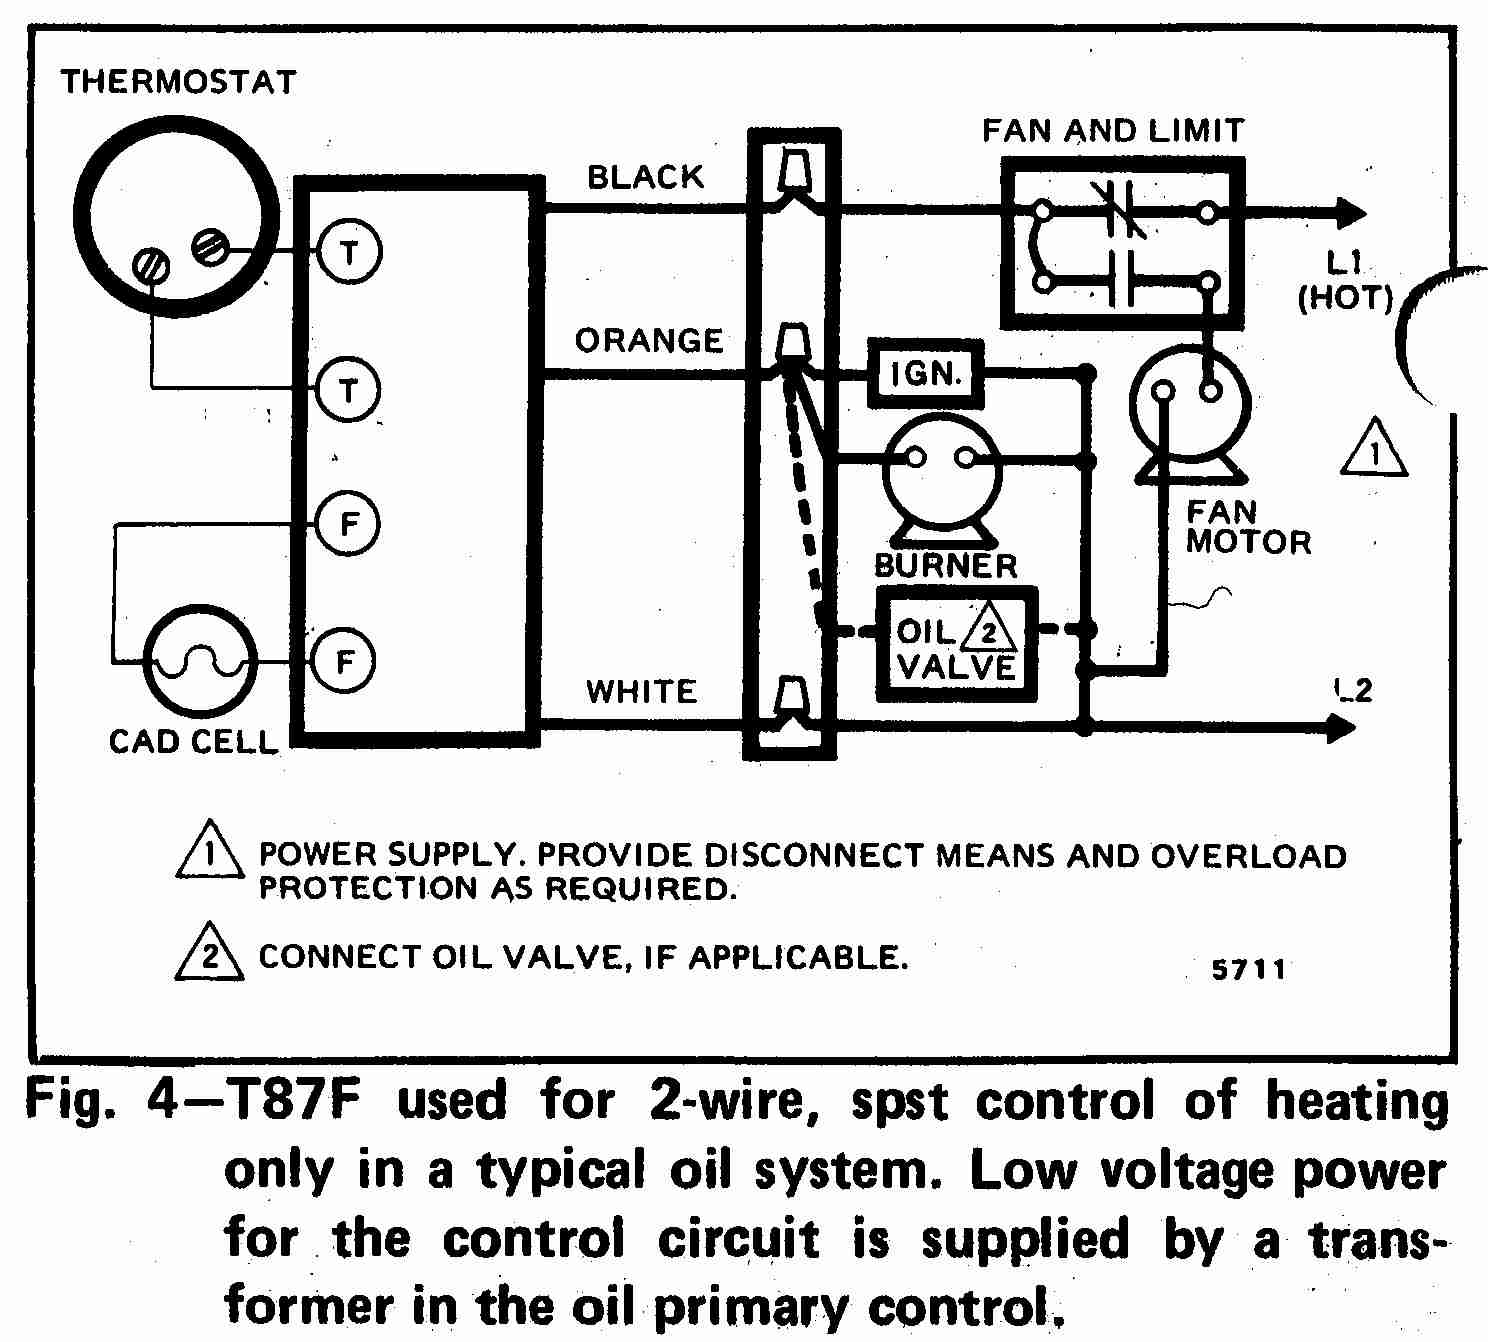 Heat Pump Thermostat Wiring Diagram Wiring Diagram For Thermostat Wiring Diagram Project